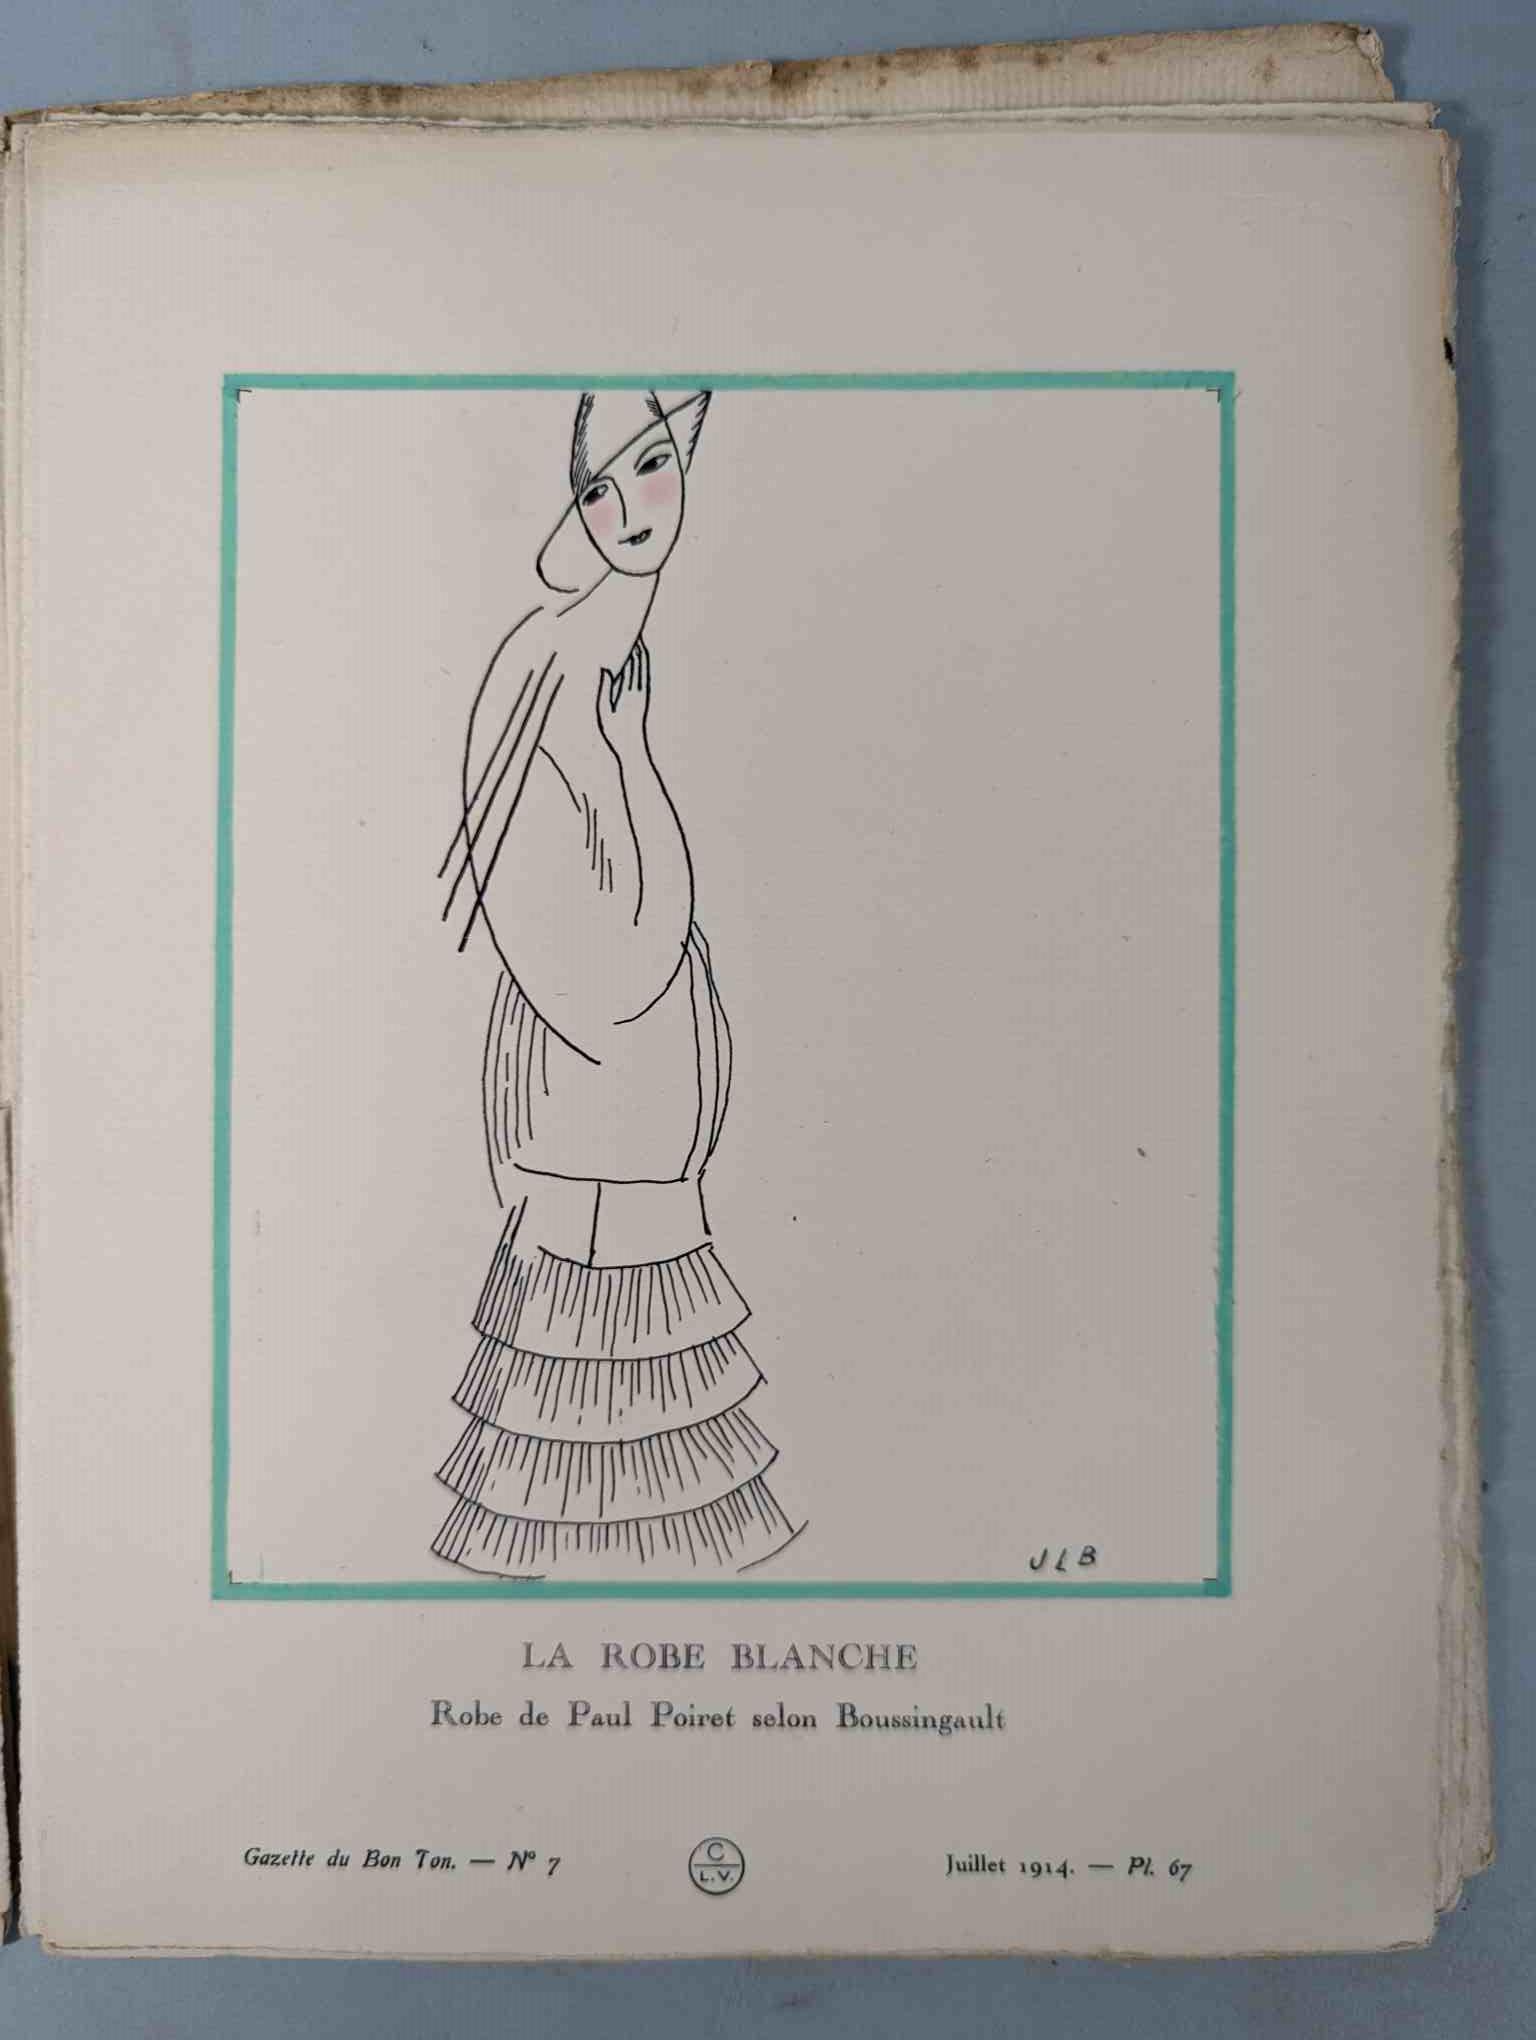 FASHION. VOGEL, Lucien. GAZETTE DU BON TON: Art-Modes & Frivolités, Paris 1913-14, 4 vol. - Image 43 of 54